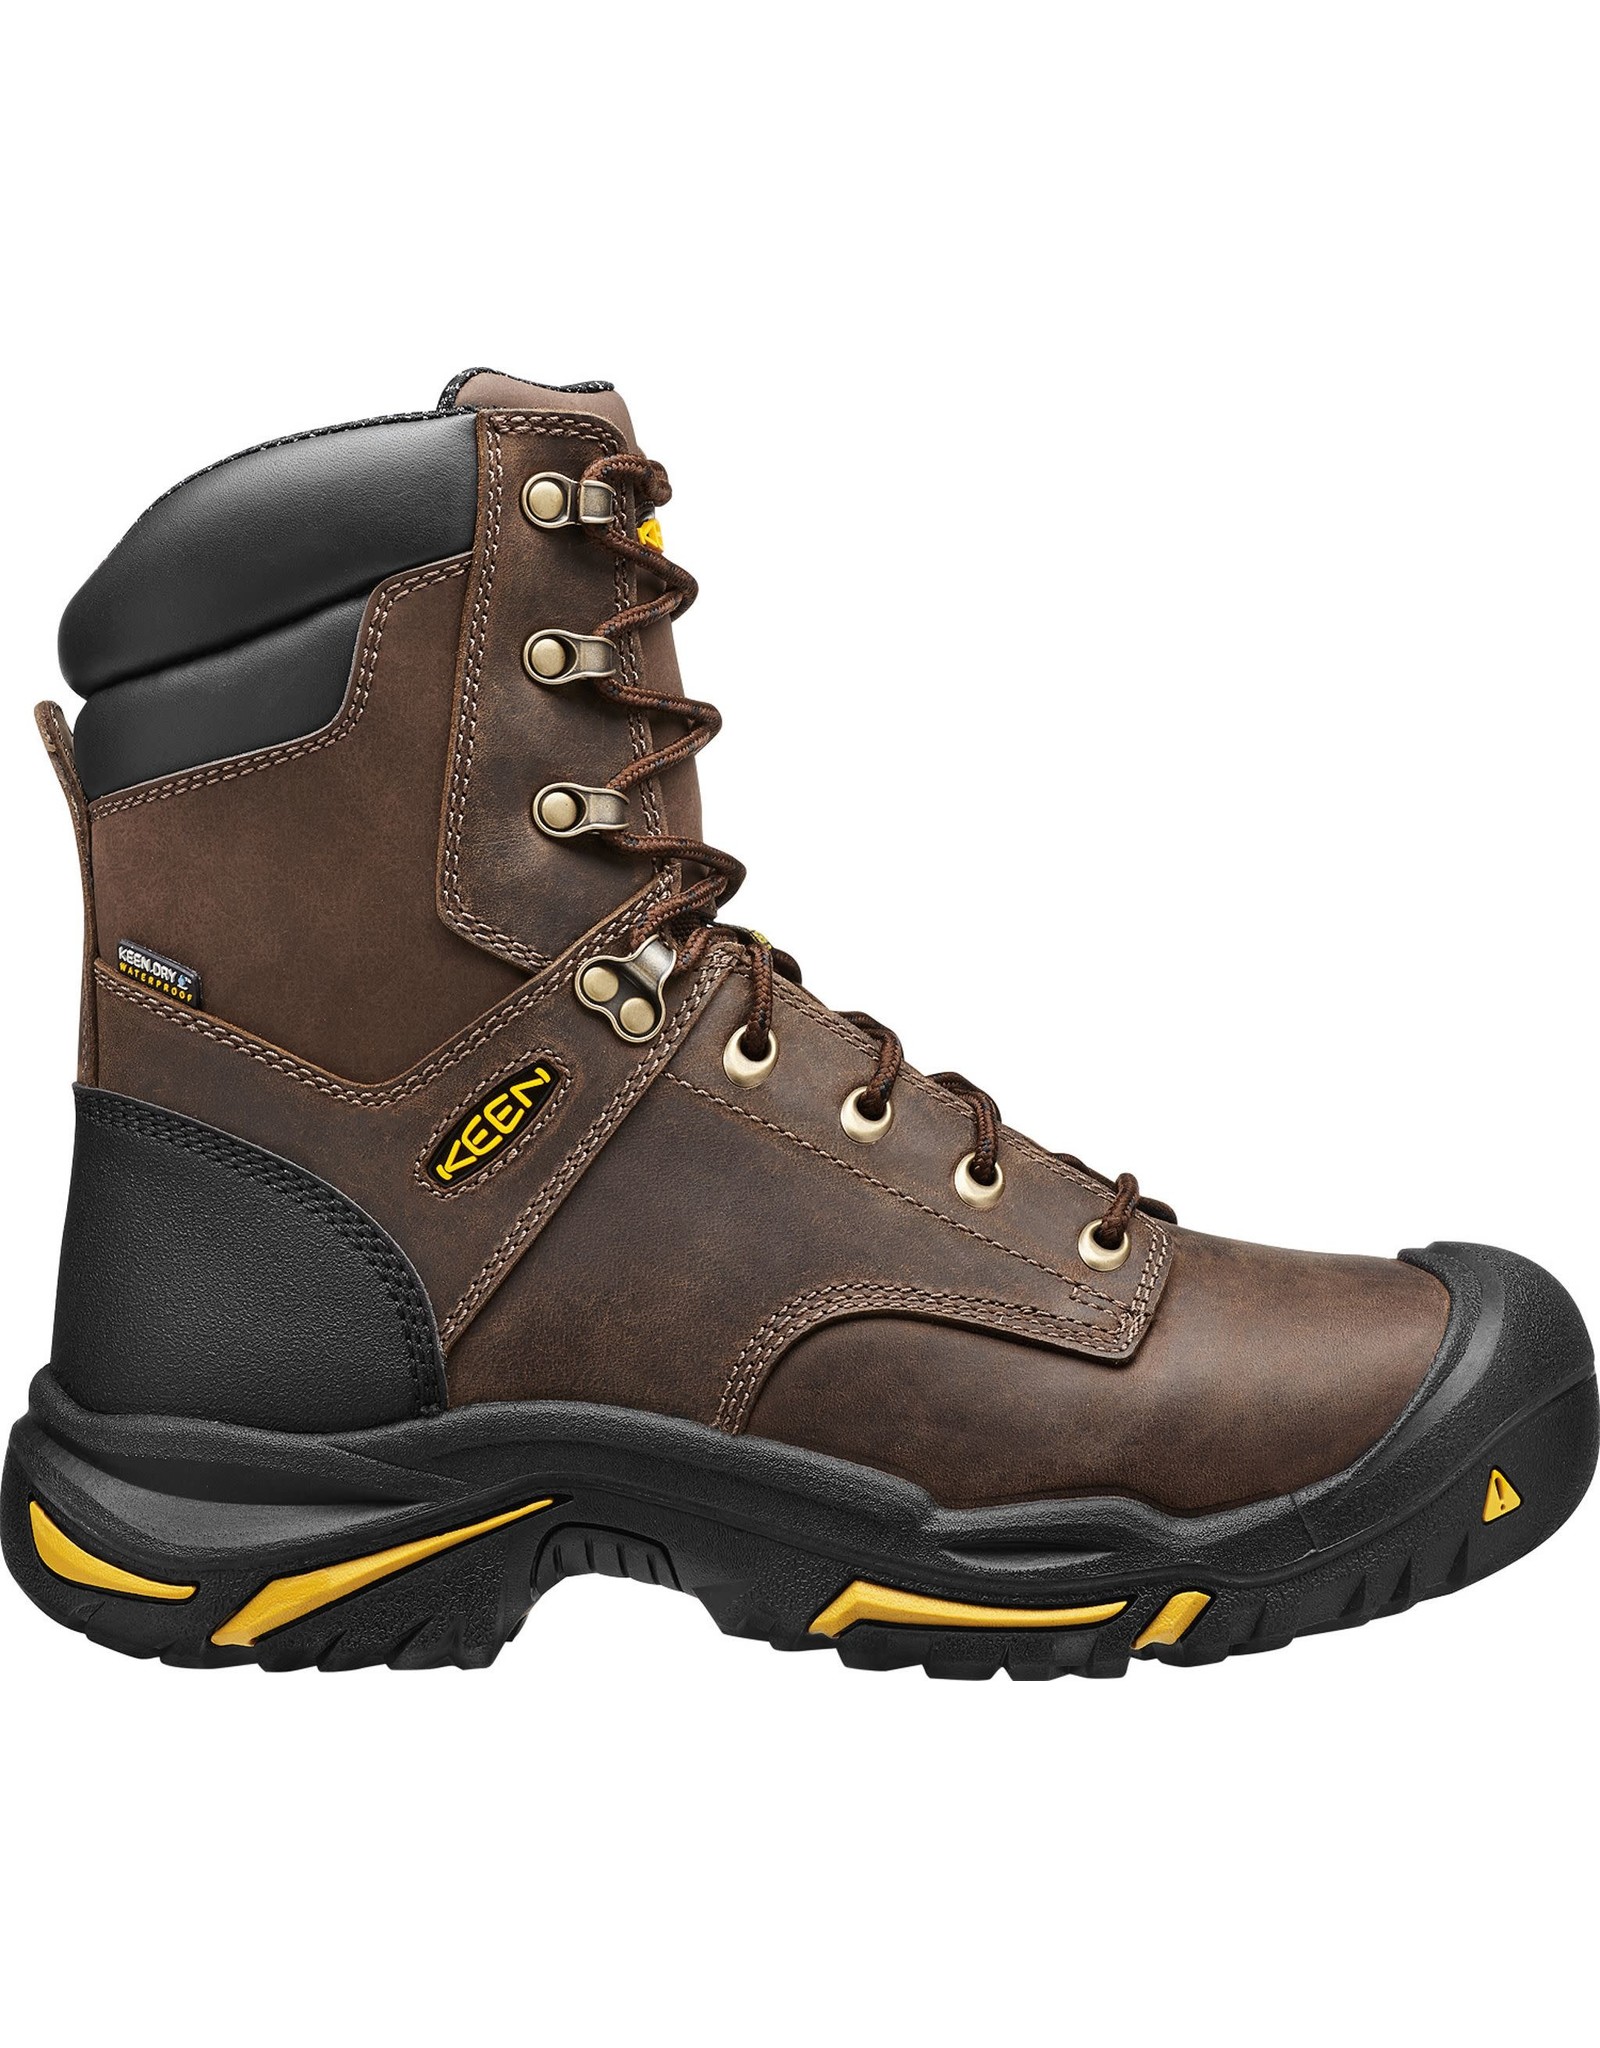 Keen Men's Mt. Vernon 8” 1013257 Steel Toe Work Boots